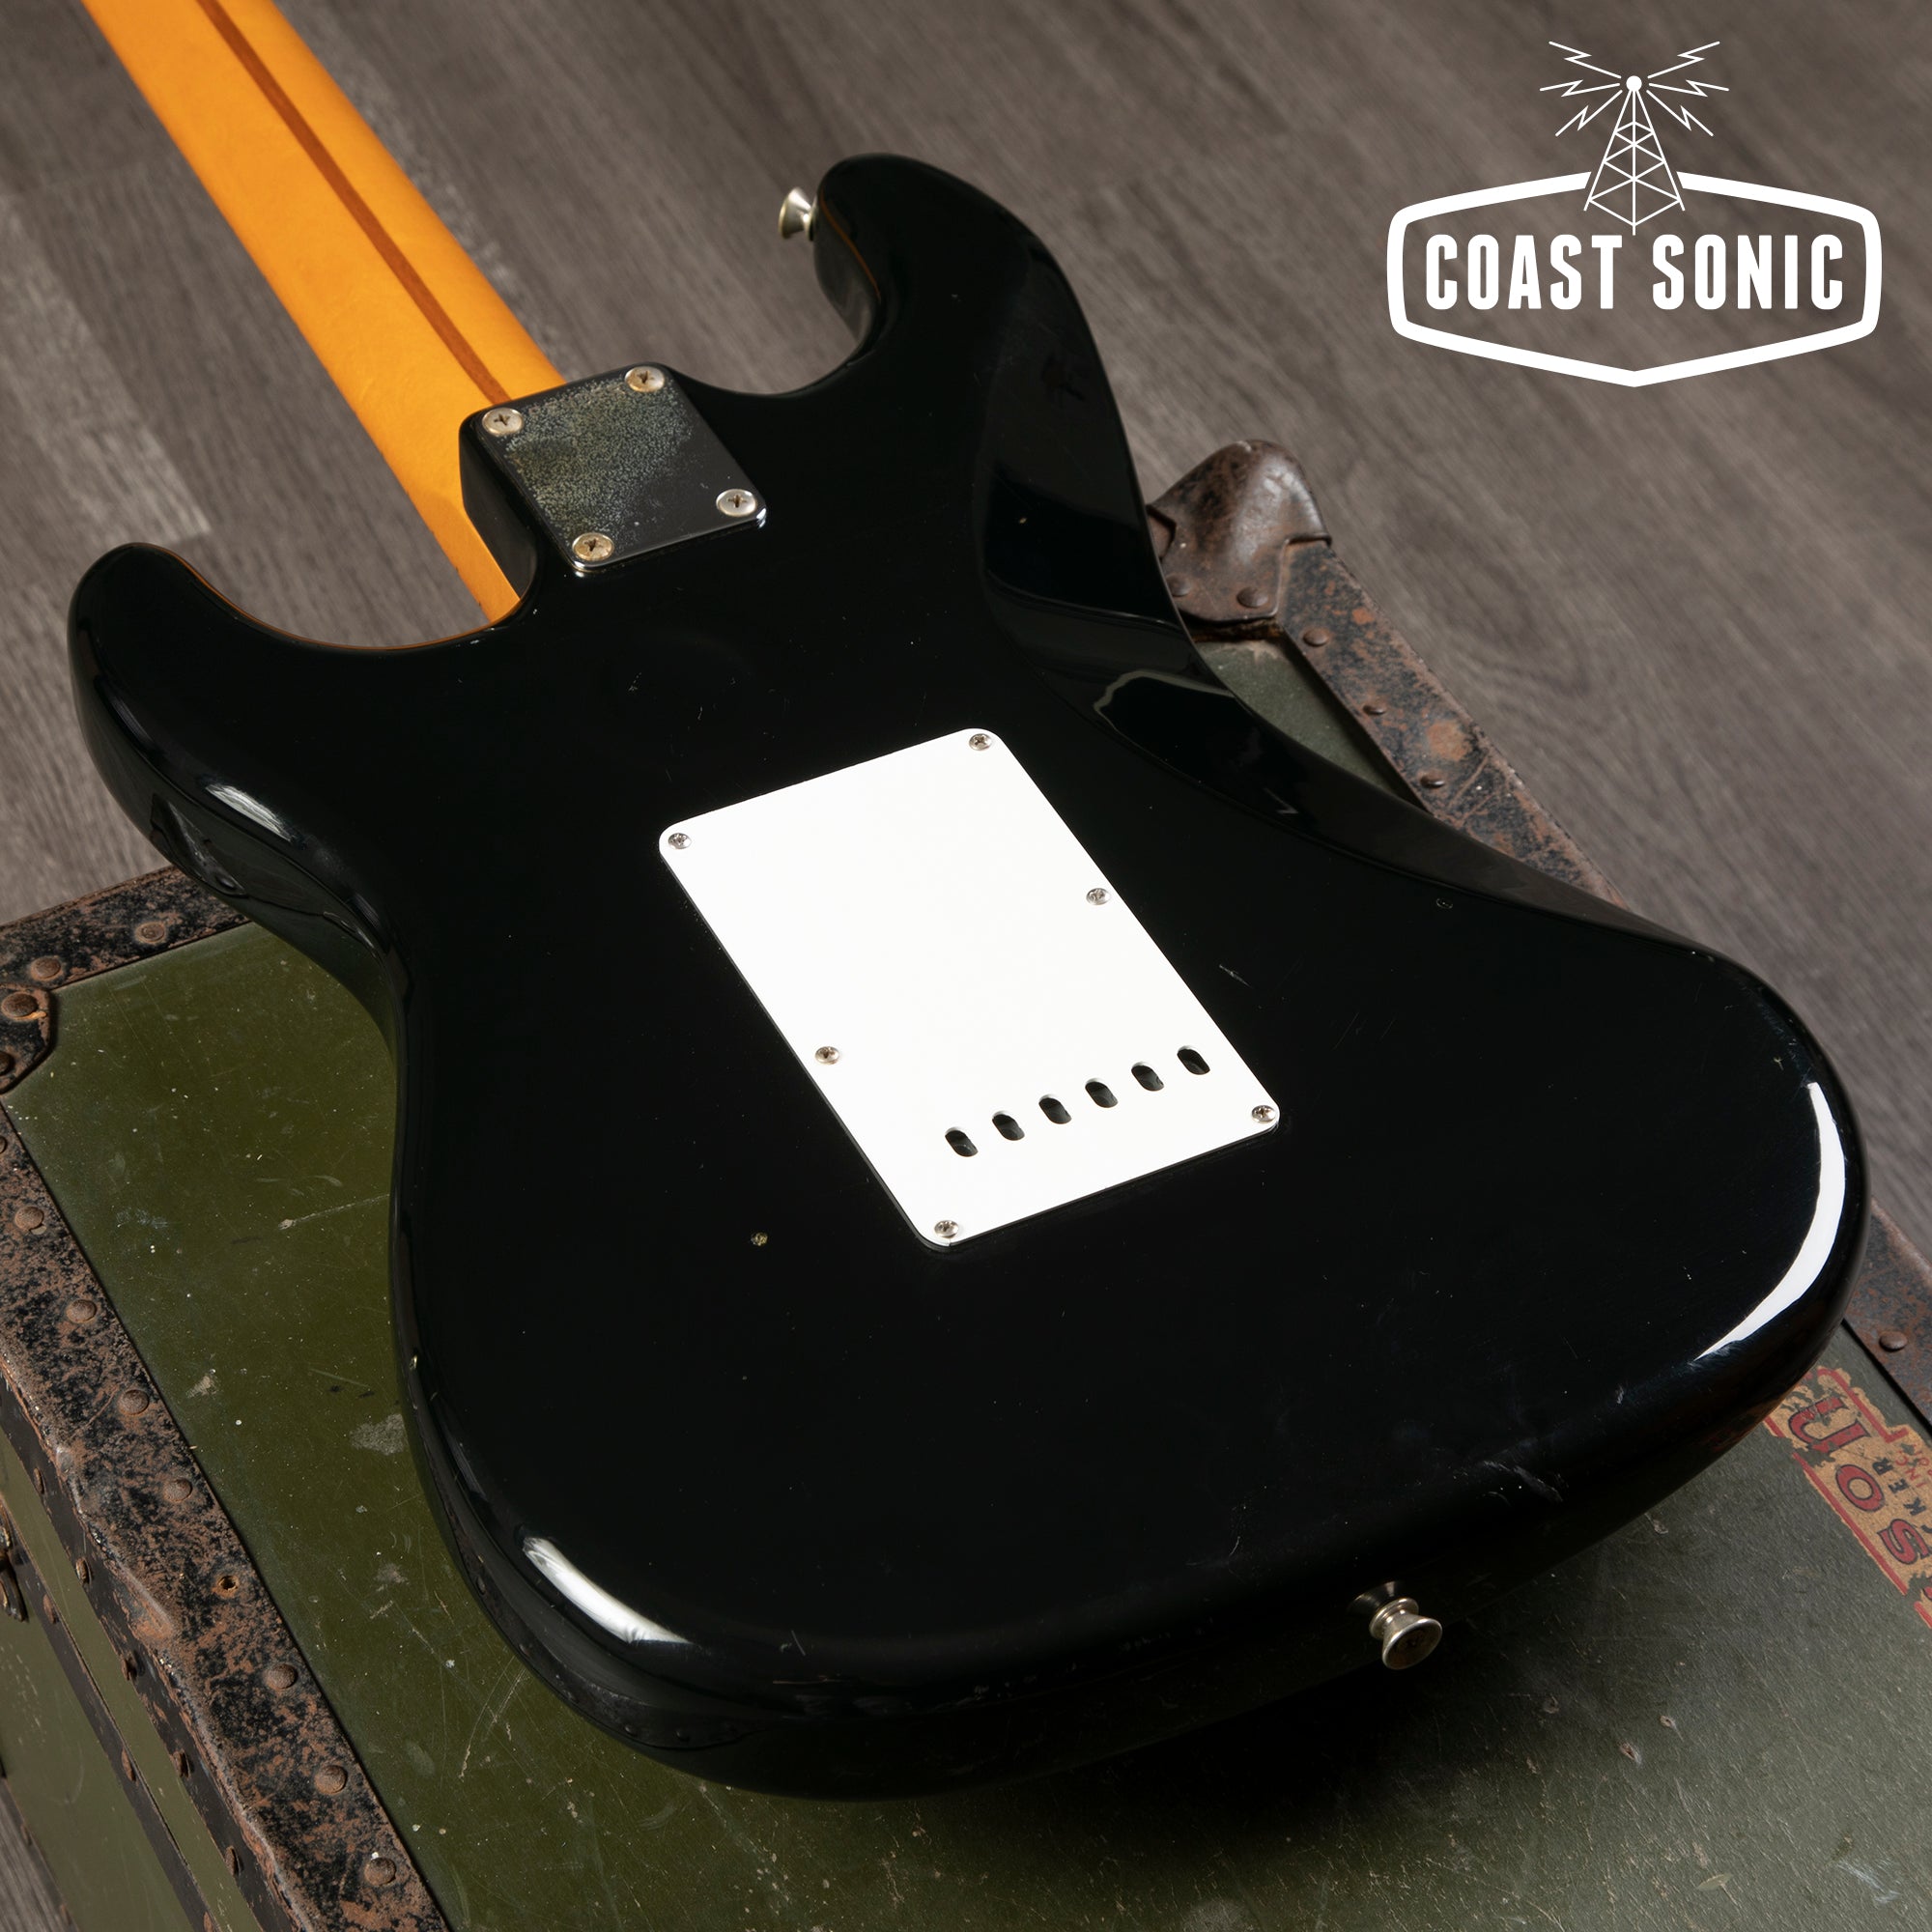 1985 Fender Fender '57 Stratocaster ST57 Reissue Made in Japan